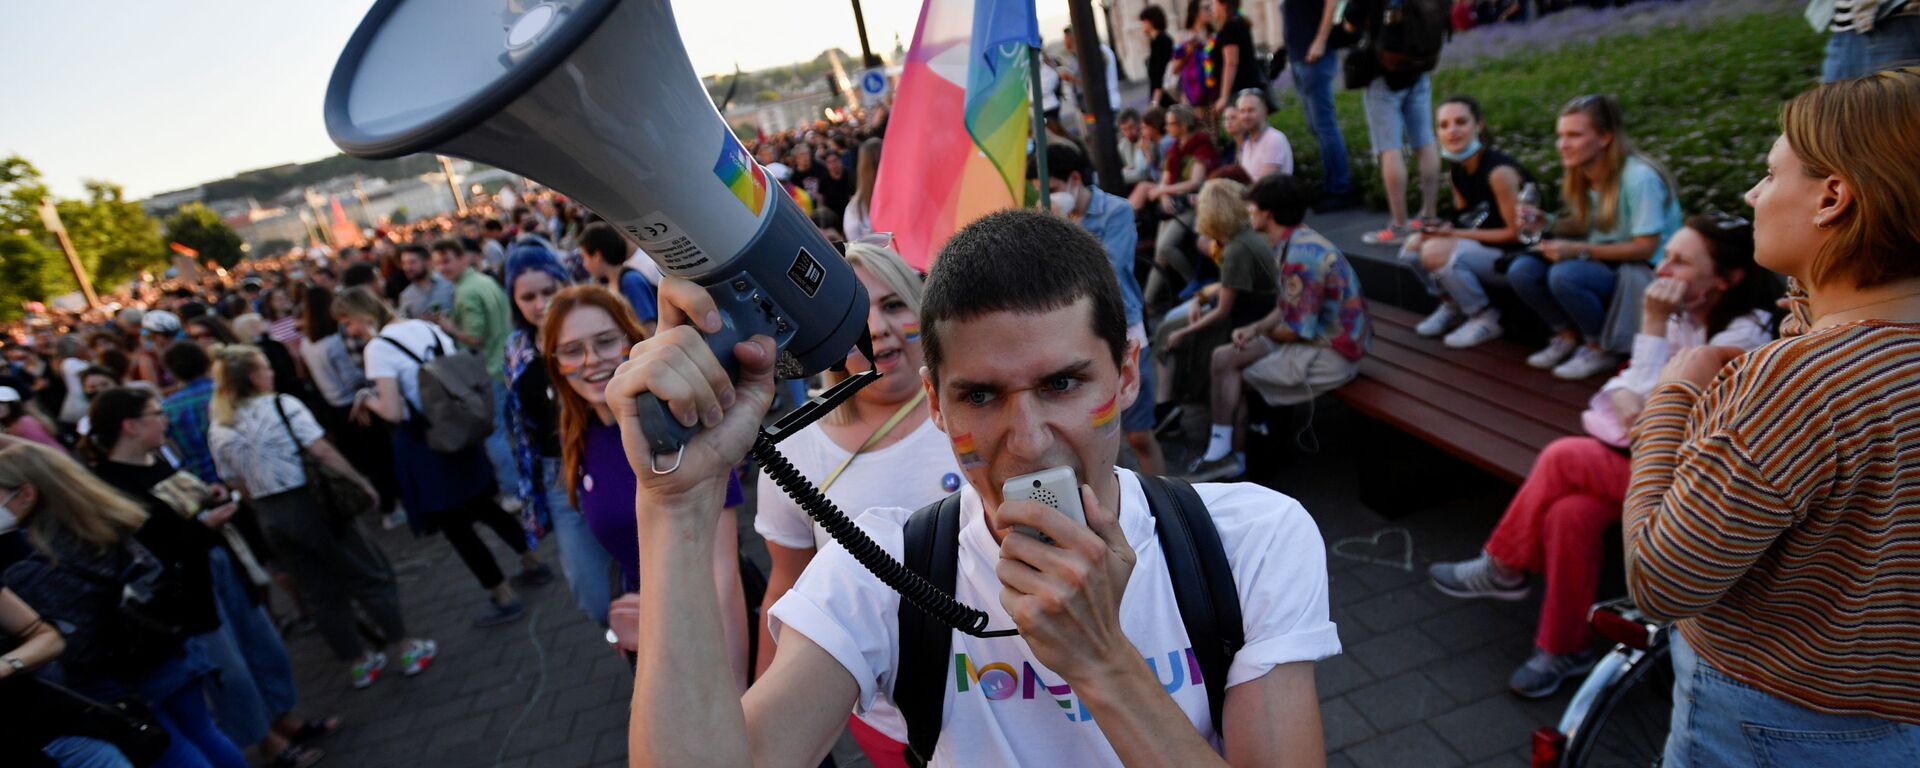 Biểu tình phản đối việc thông qua luật cấm tuyên truyền LGBT ở Hungary - Sputnik Việt Nam, 1920, 07.07.2021